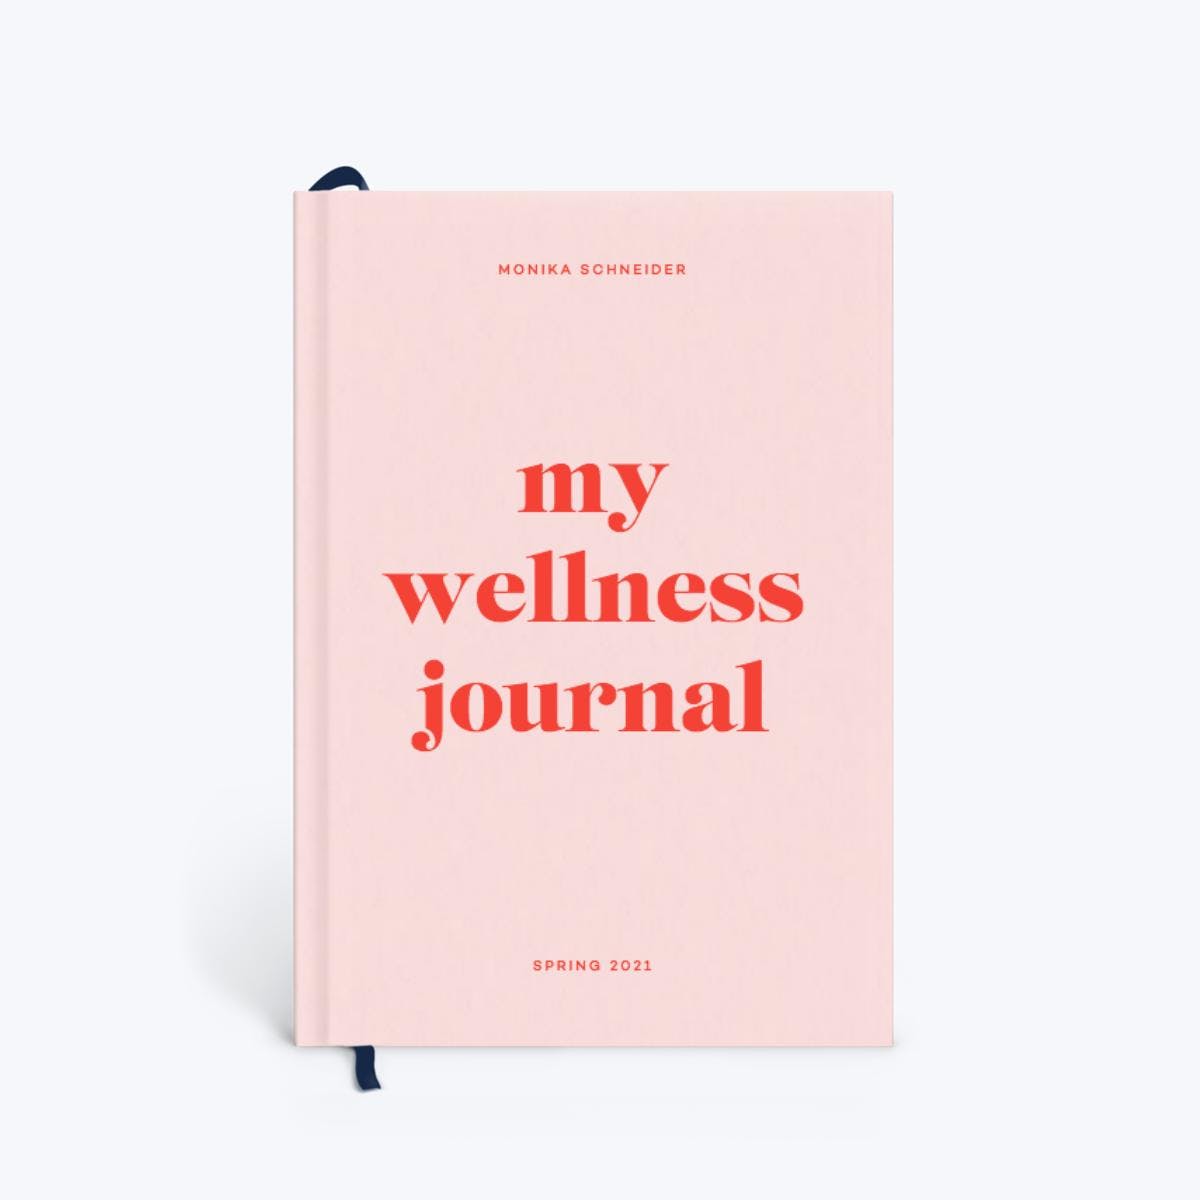 Papier + Wellness Journal